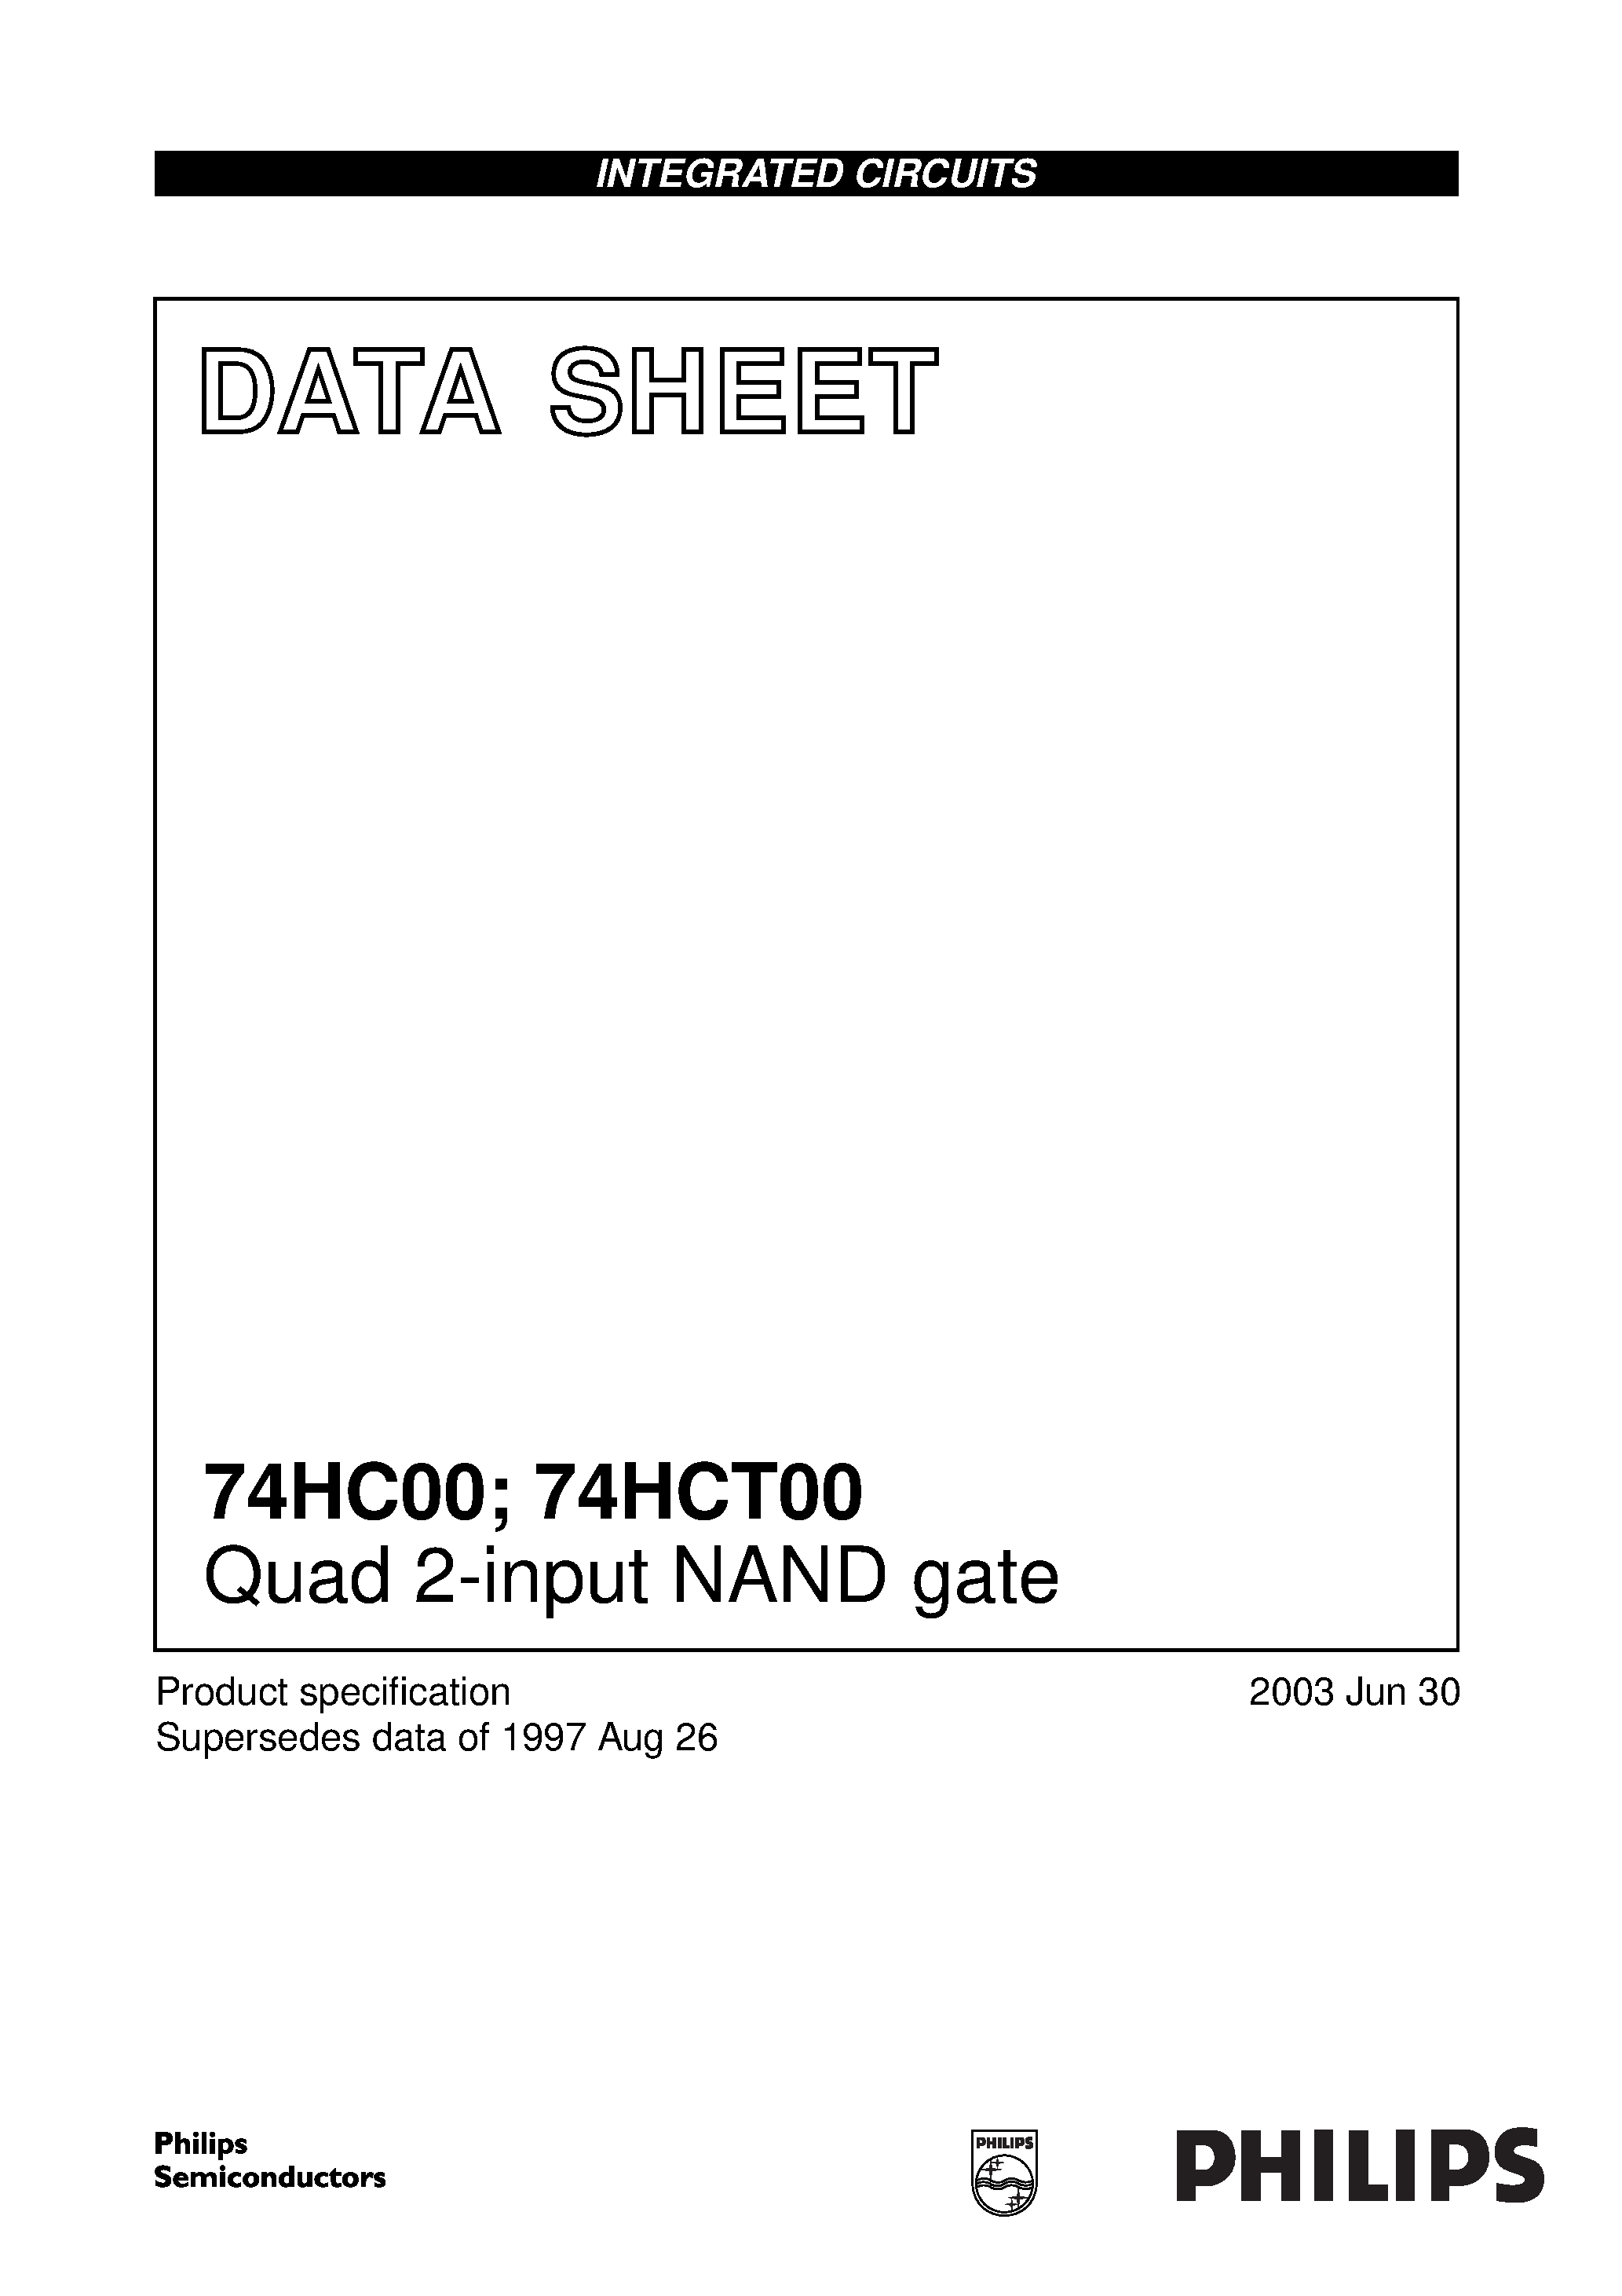 Даташит 74HCT00 - Quad 2-input NAND gate страница 1